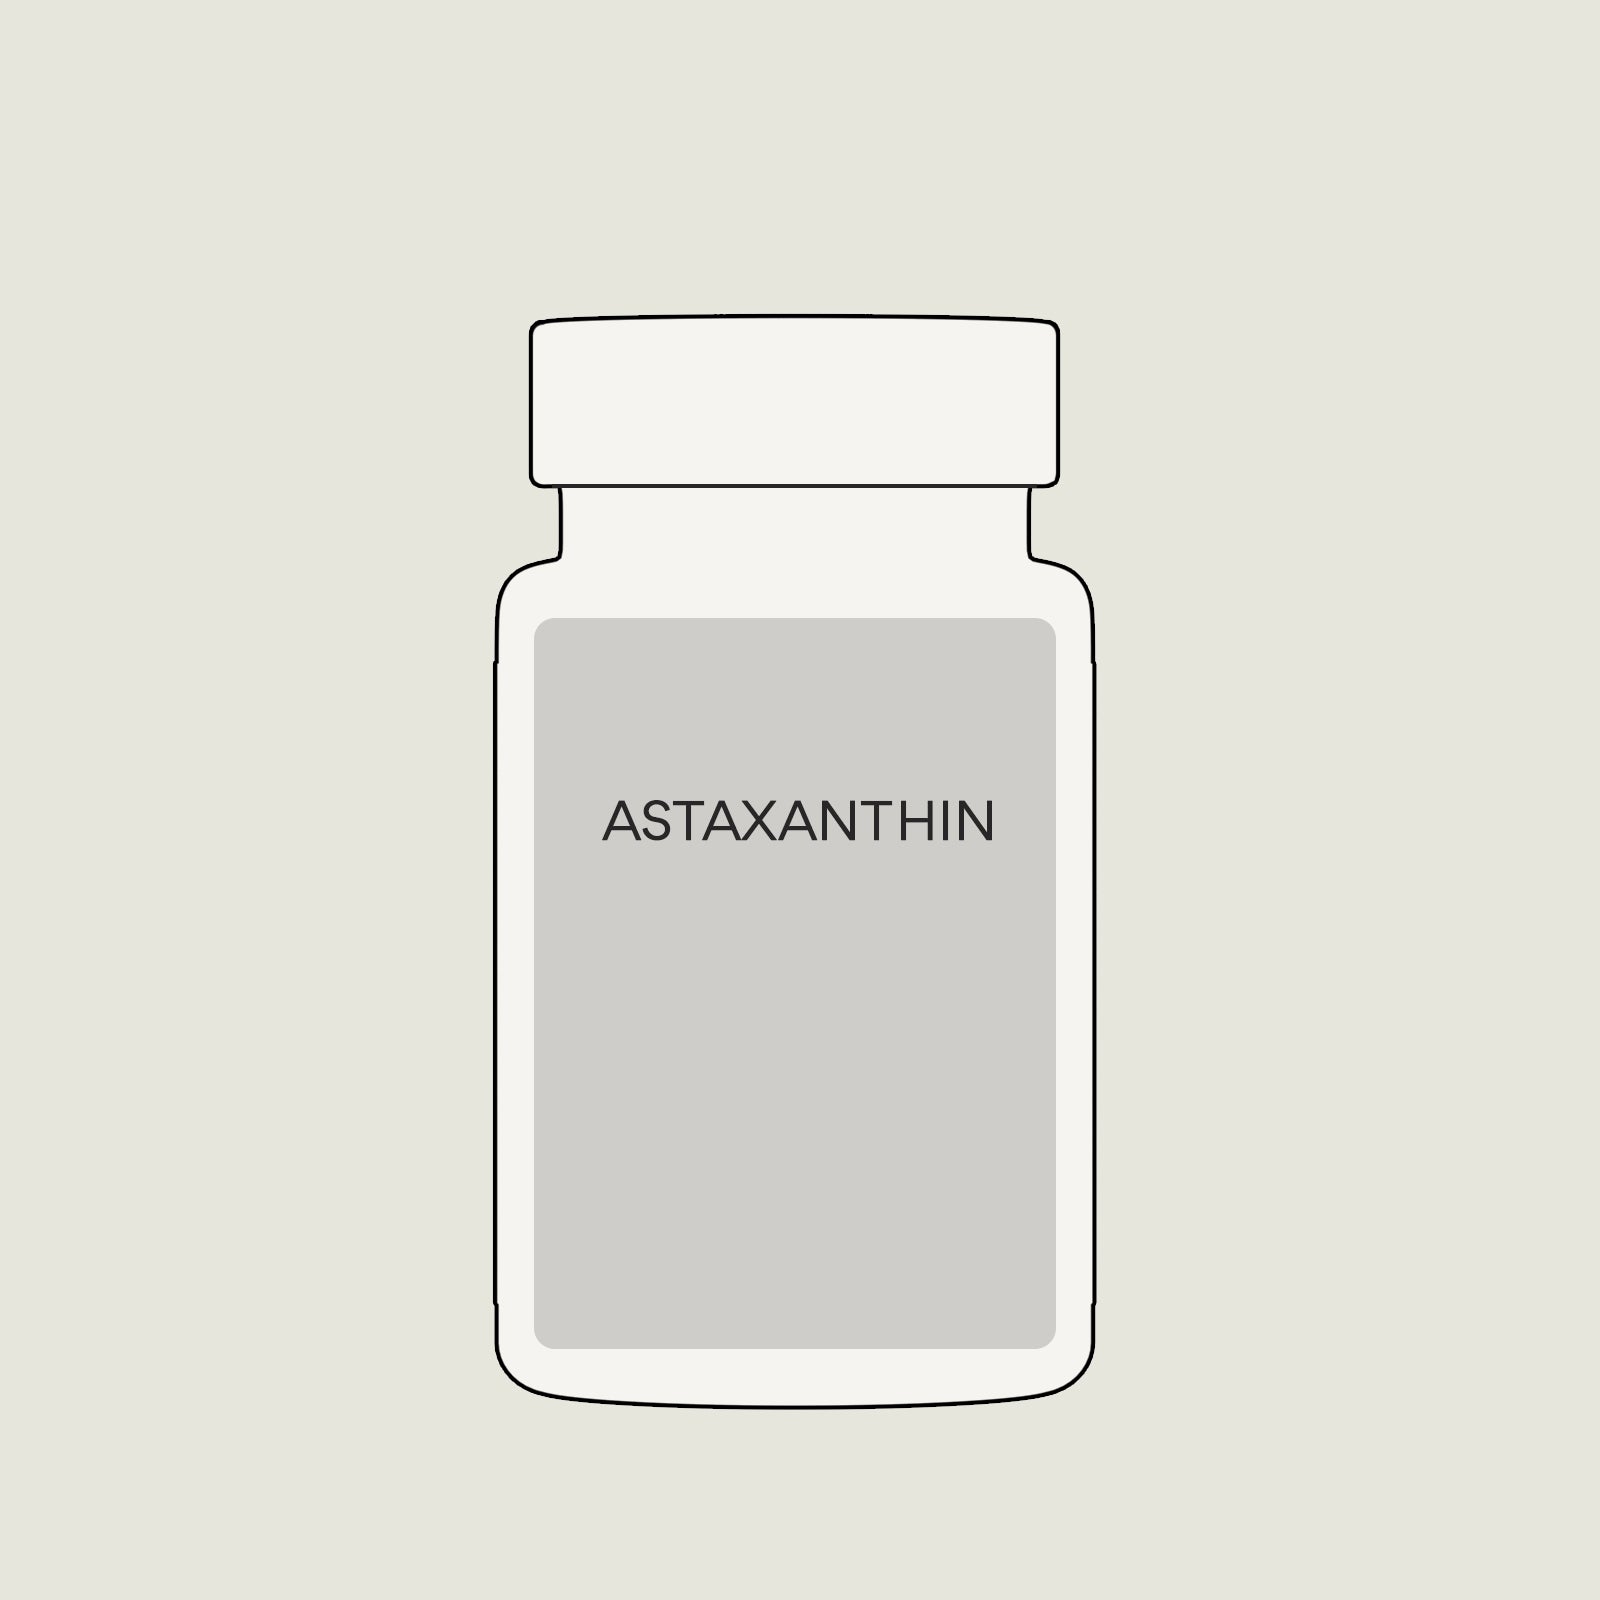 Antioxidant "Astaxanthin", 60 caps 8mg each